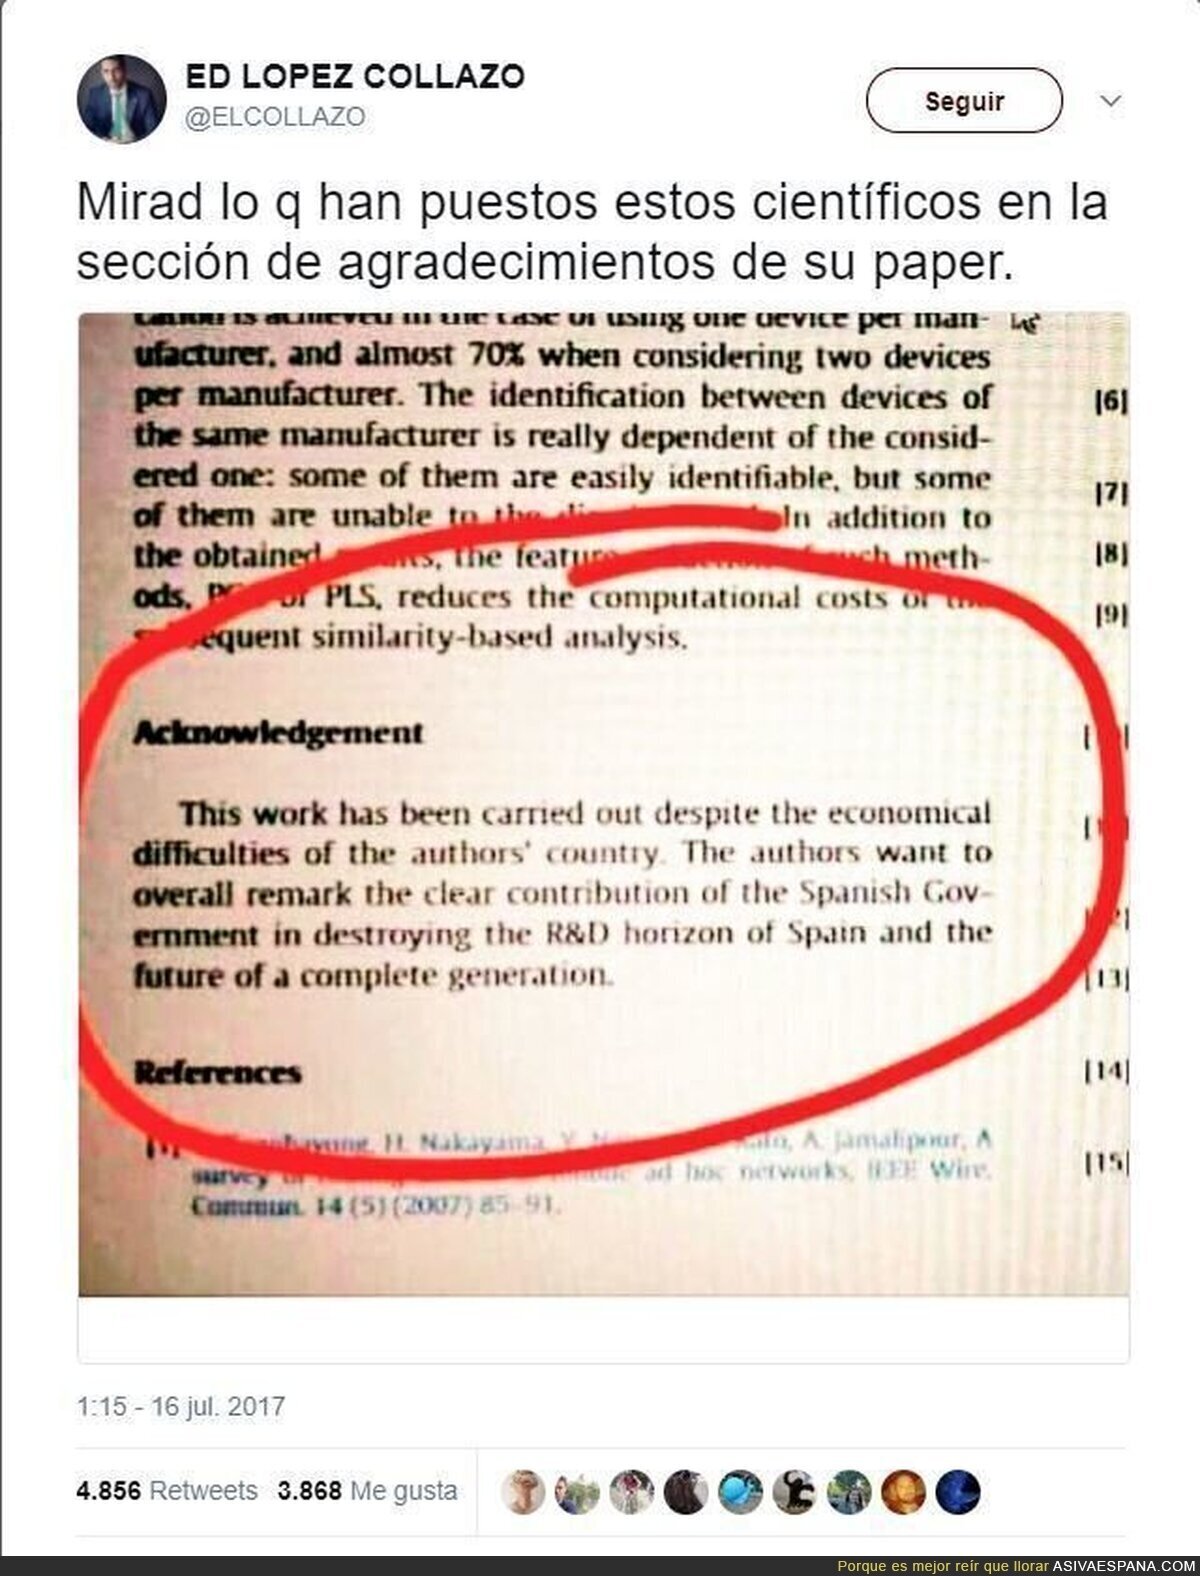 Cientificos "agradecen" al gobierno español su contribución al I+D en esta tesis